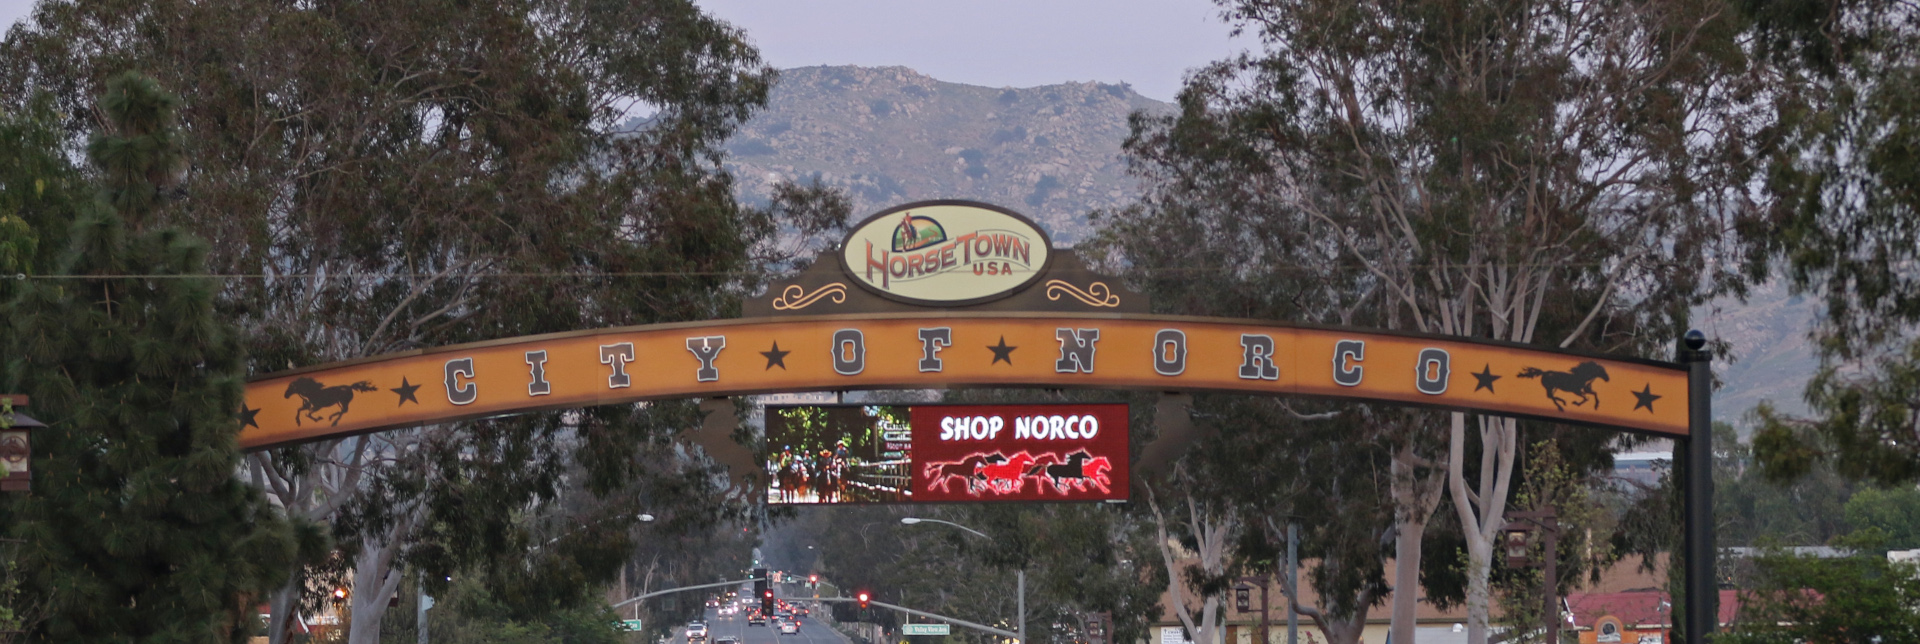 Norco California Horsetown Usa